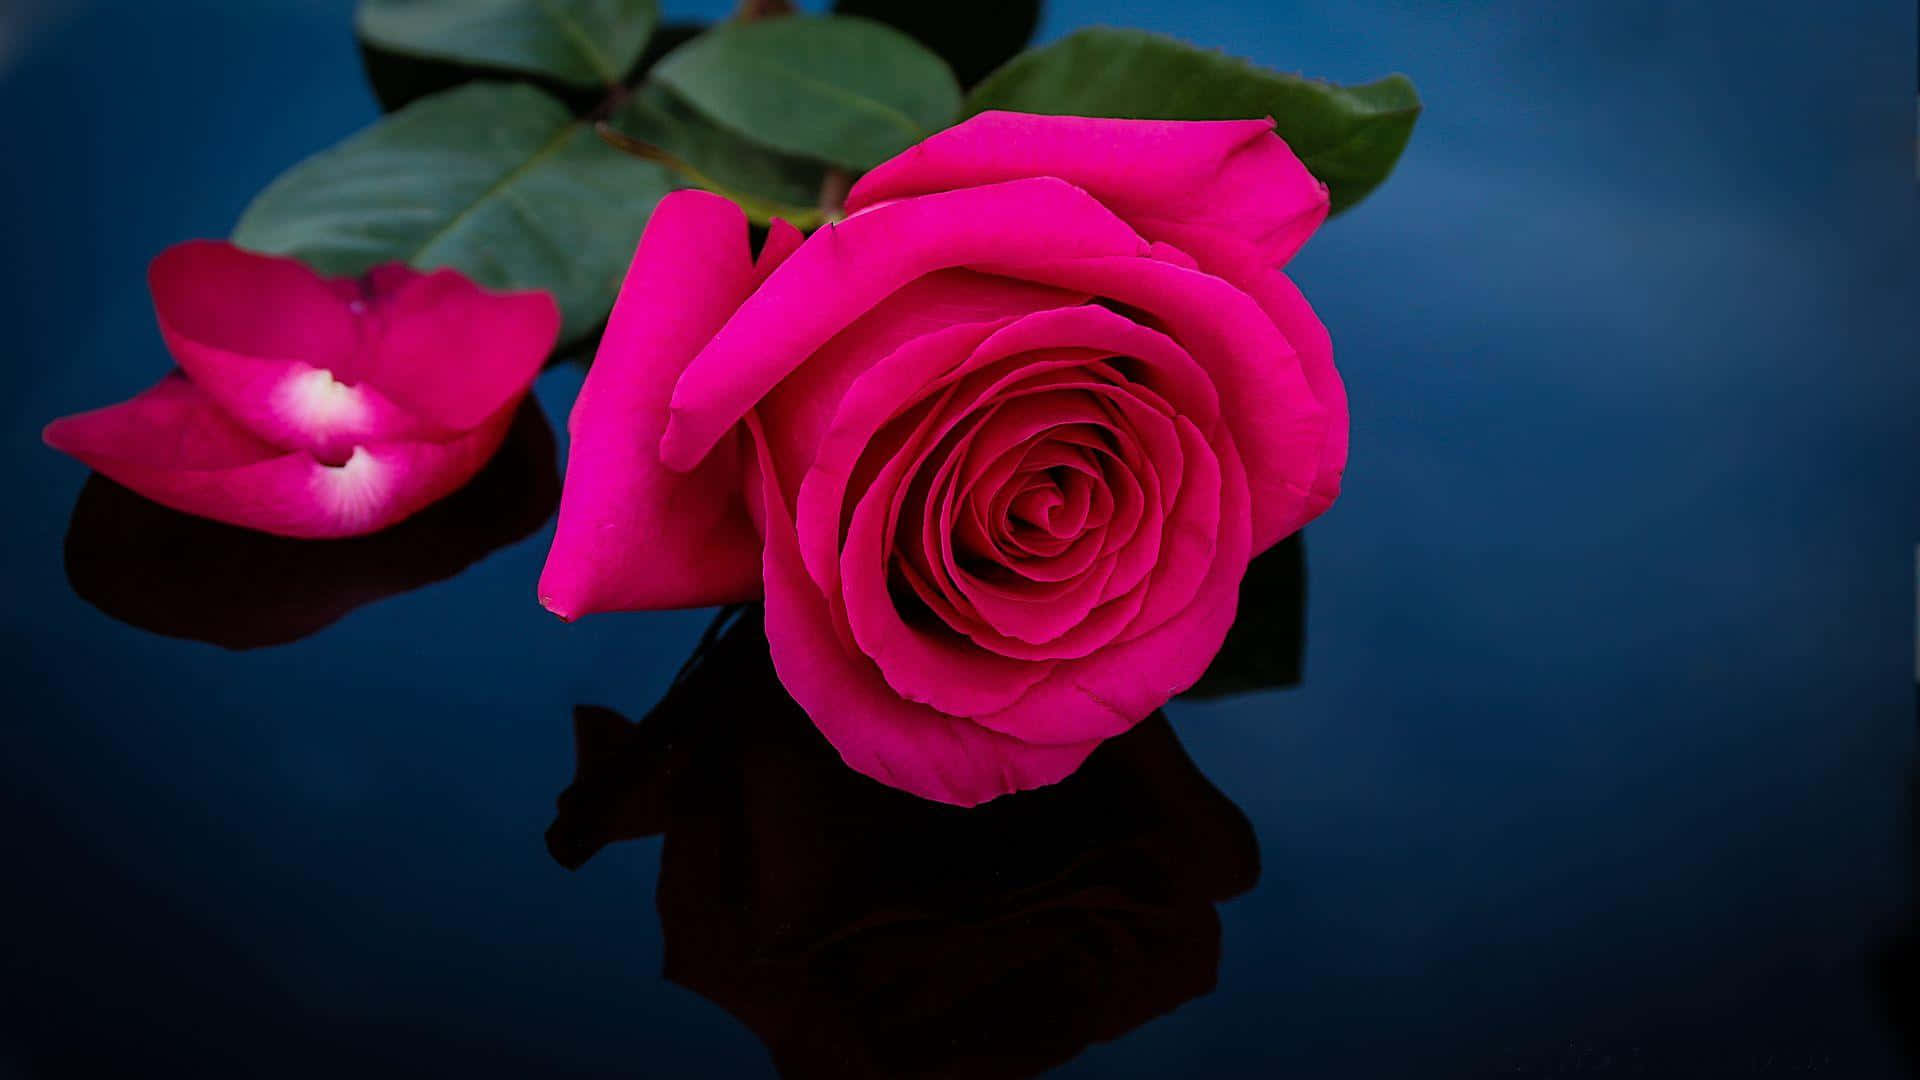 Unarosa Rosa De Una Belleza Impresionante